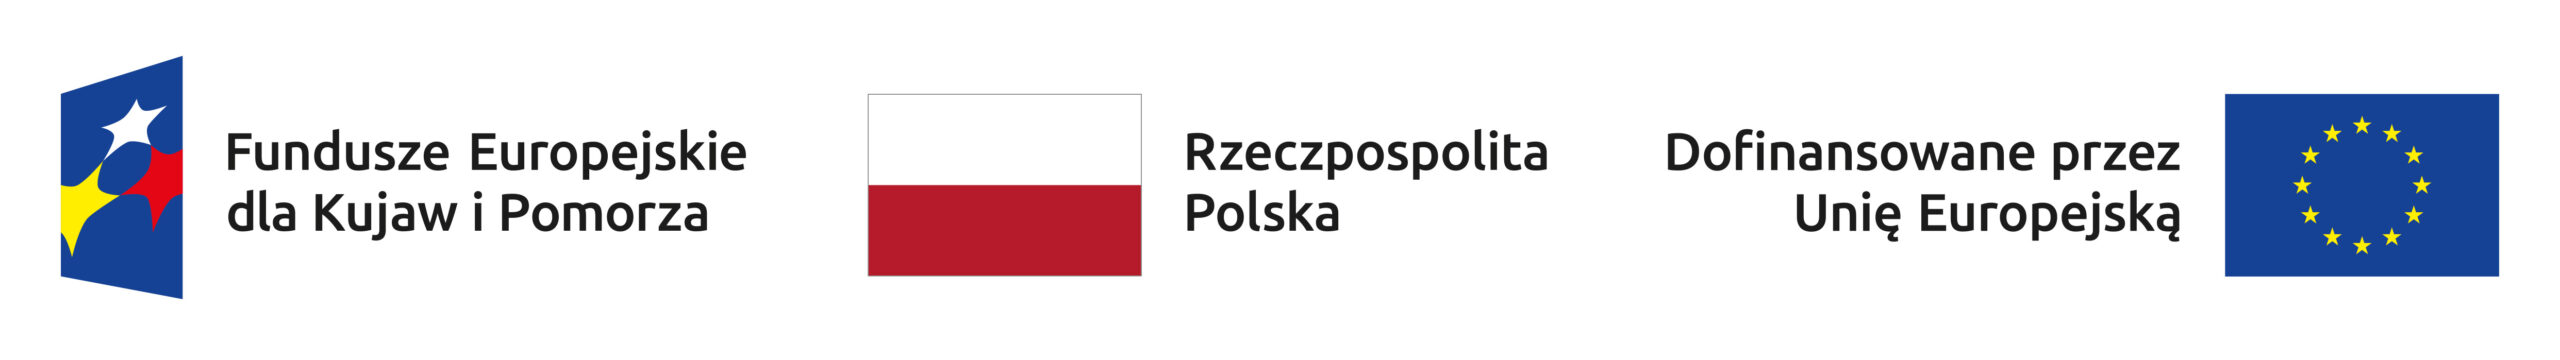 belka z logotypami unijnymi projekt 2021-2027